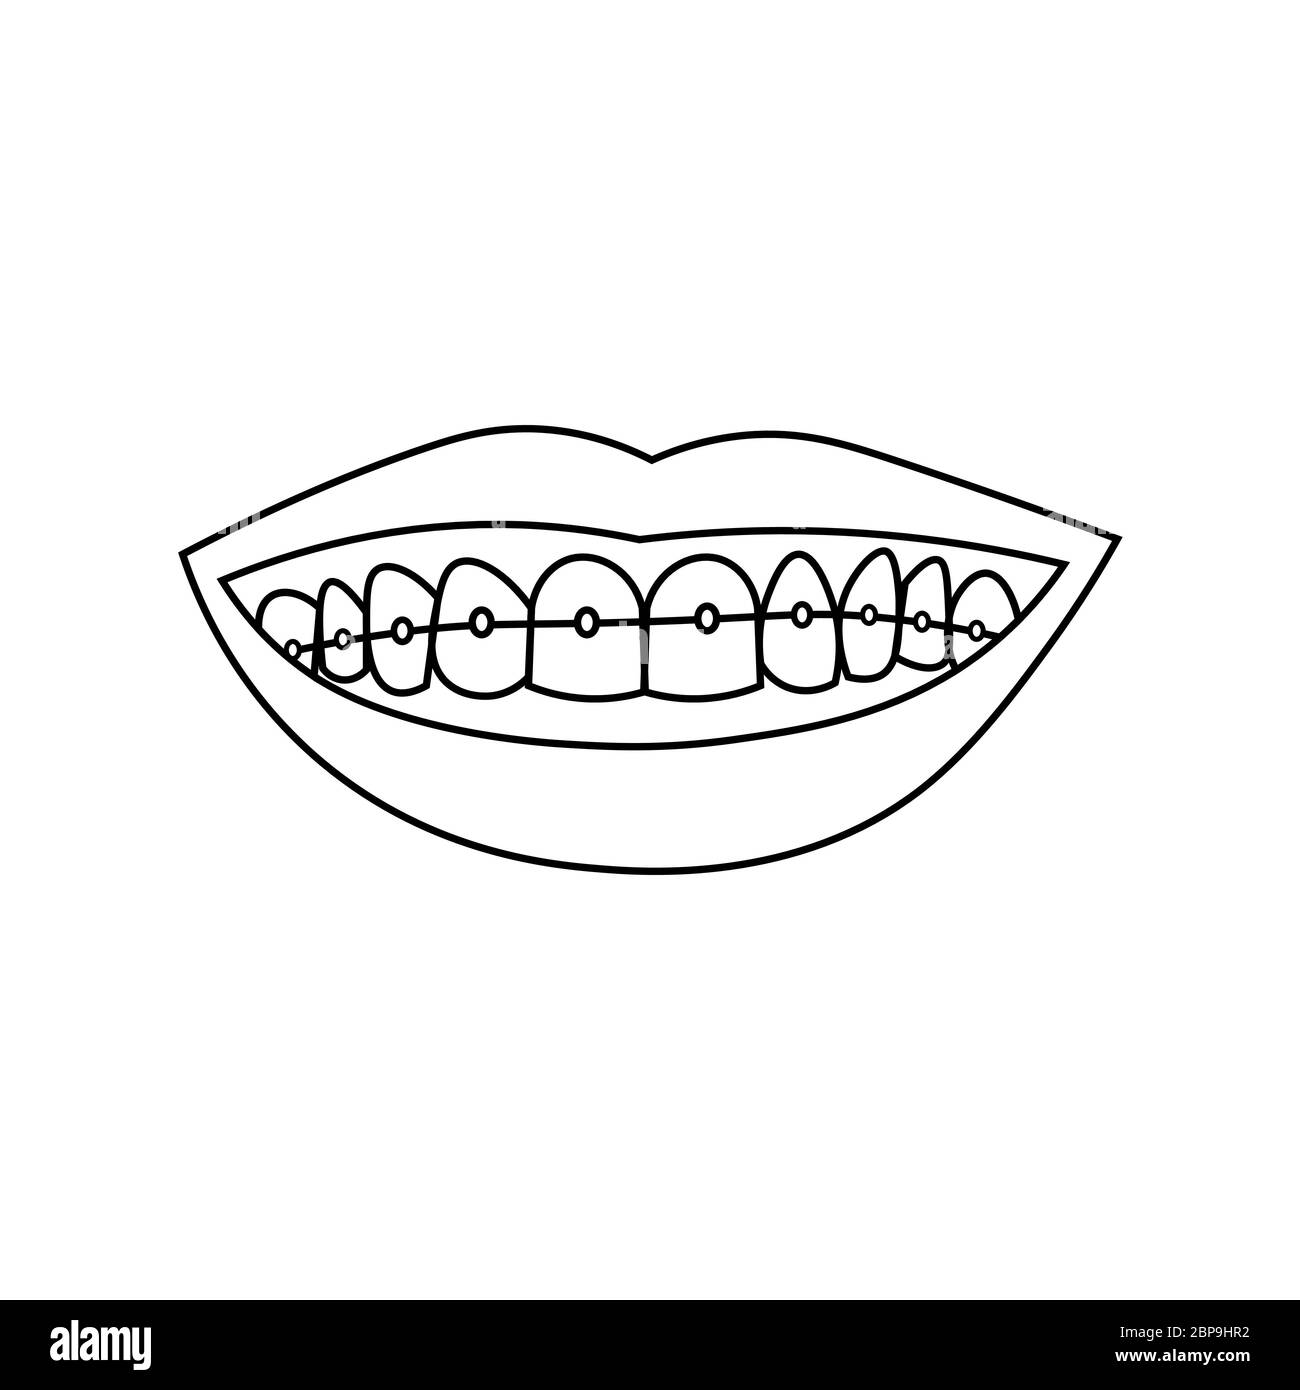 Labios sonrientes con dientes y llaves. Contorno negro sobre fondo blanco. La ilustración vectorial puede usarse en tarjetas de felicitación, carteles, volantes, banners, promociones, invitaciones, etc. EPS10 Ilustración del Vector